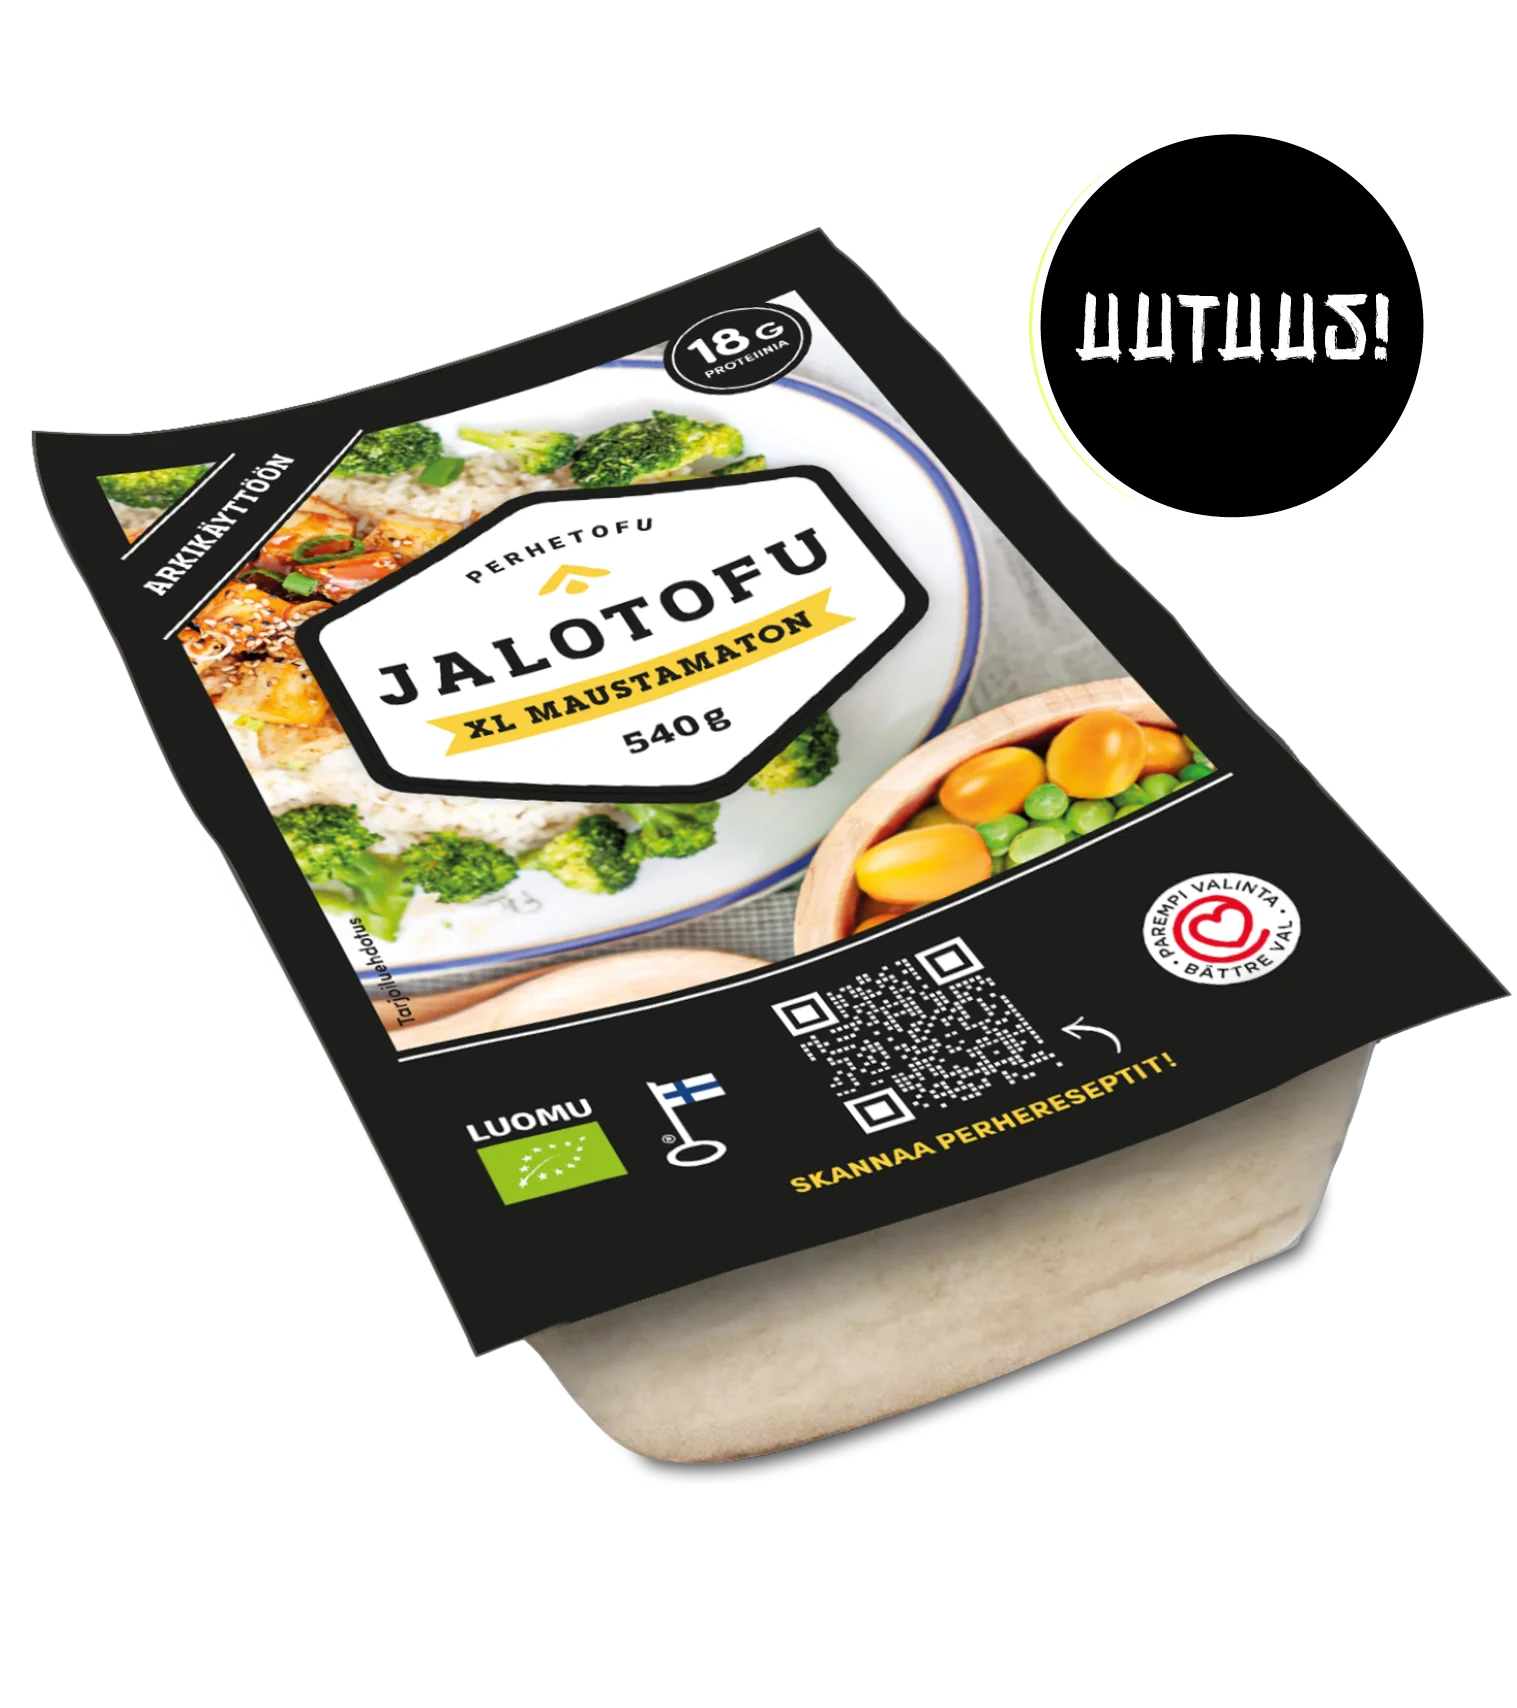 Maustamaton Jalotofu XL, toiselta nimeltään Perhetofu, on ratkaisu suurempaan tofutarpeeseen.